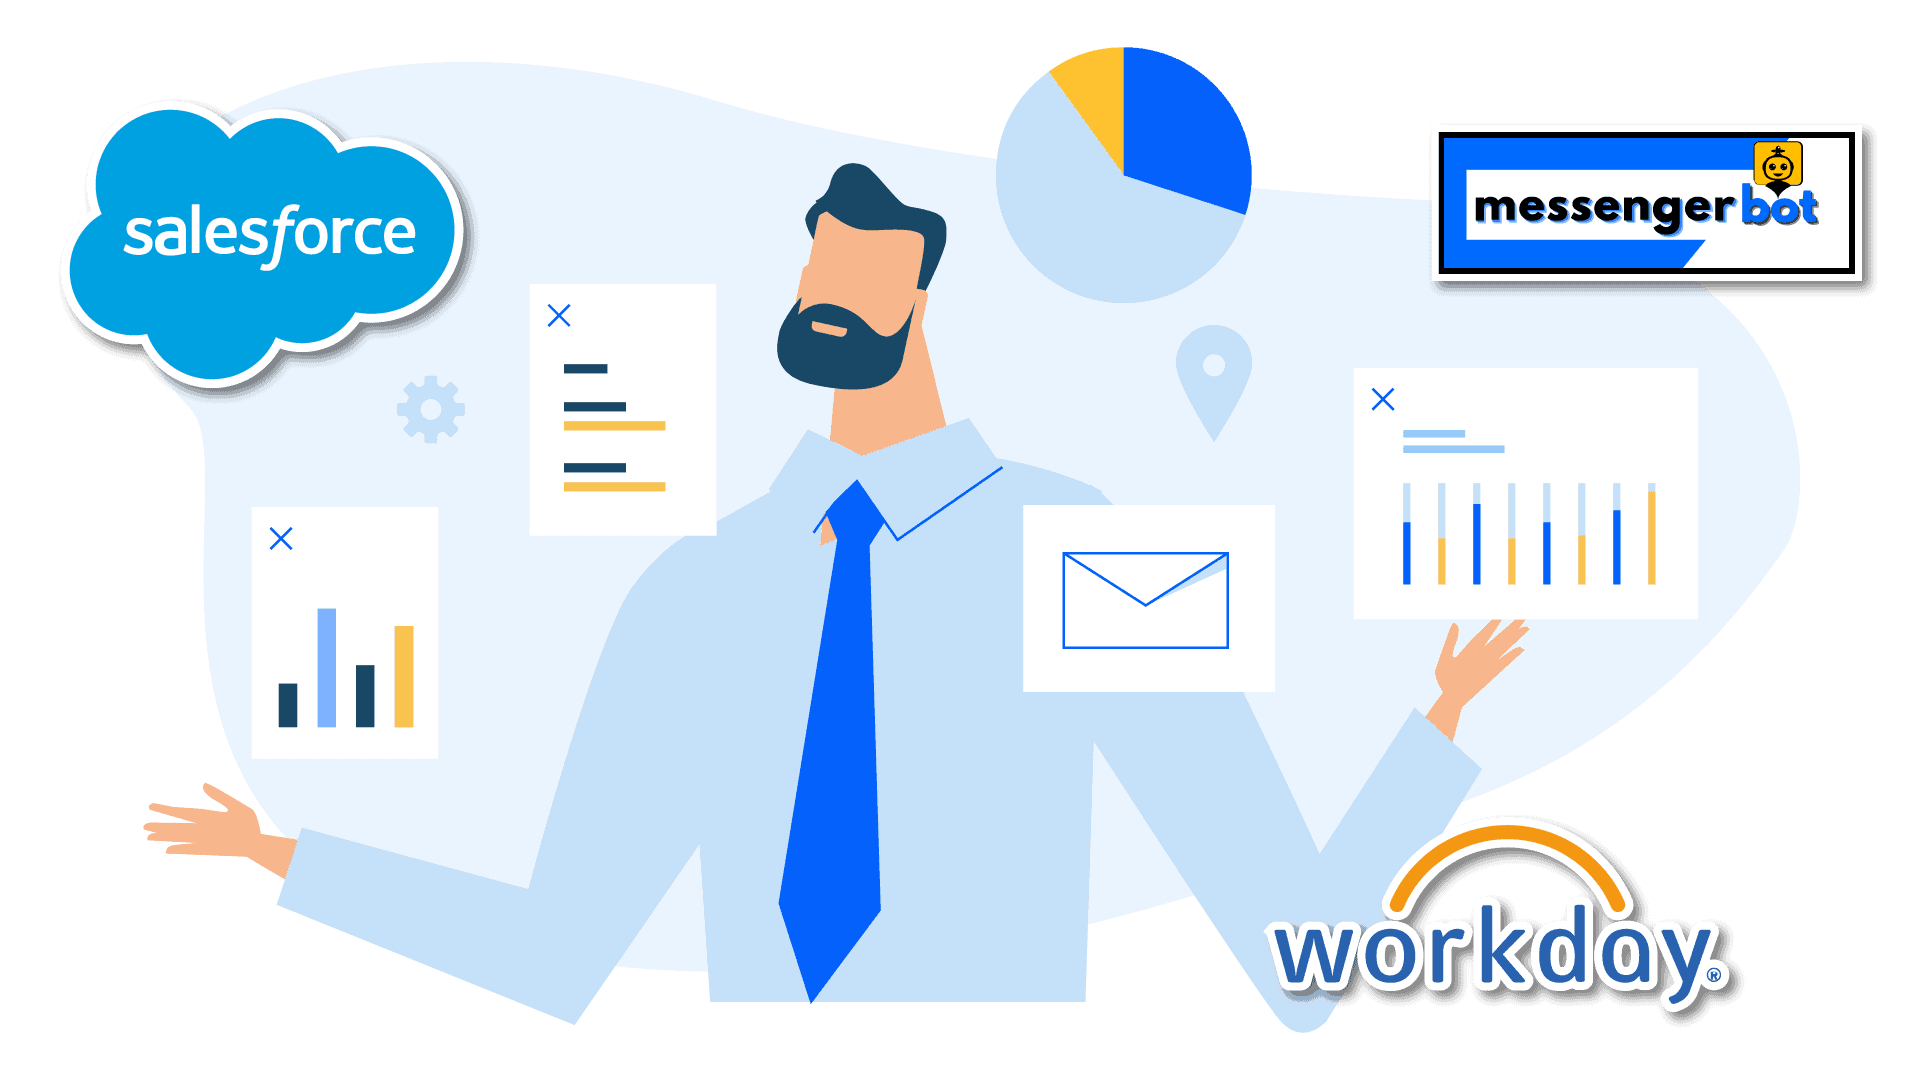 workday vs salesforce, workday vs salesforce vs messenger bot, salesforce vs workday, salesforce workday, workday and salesforce